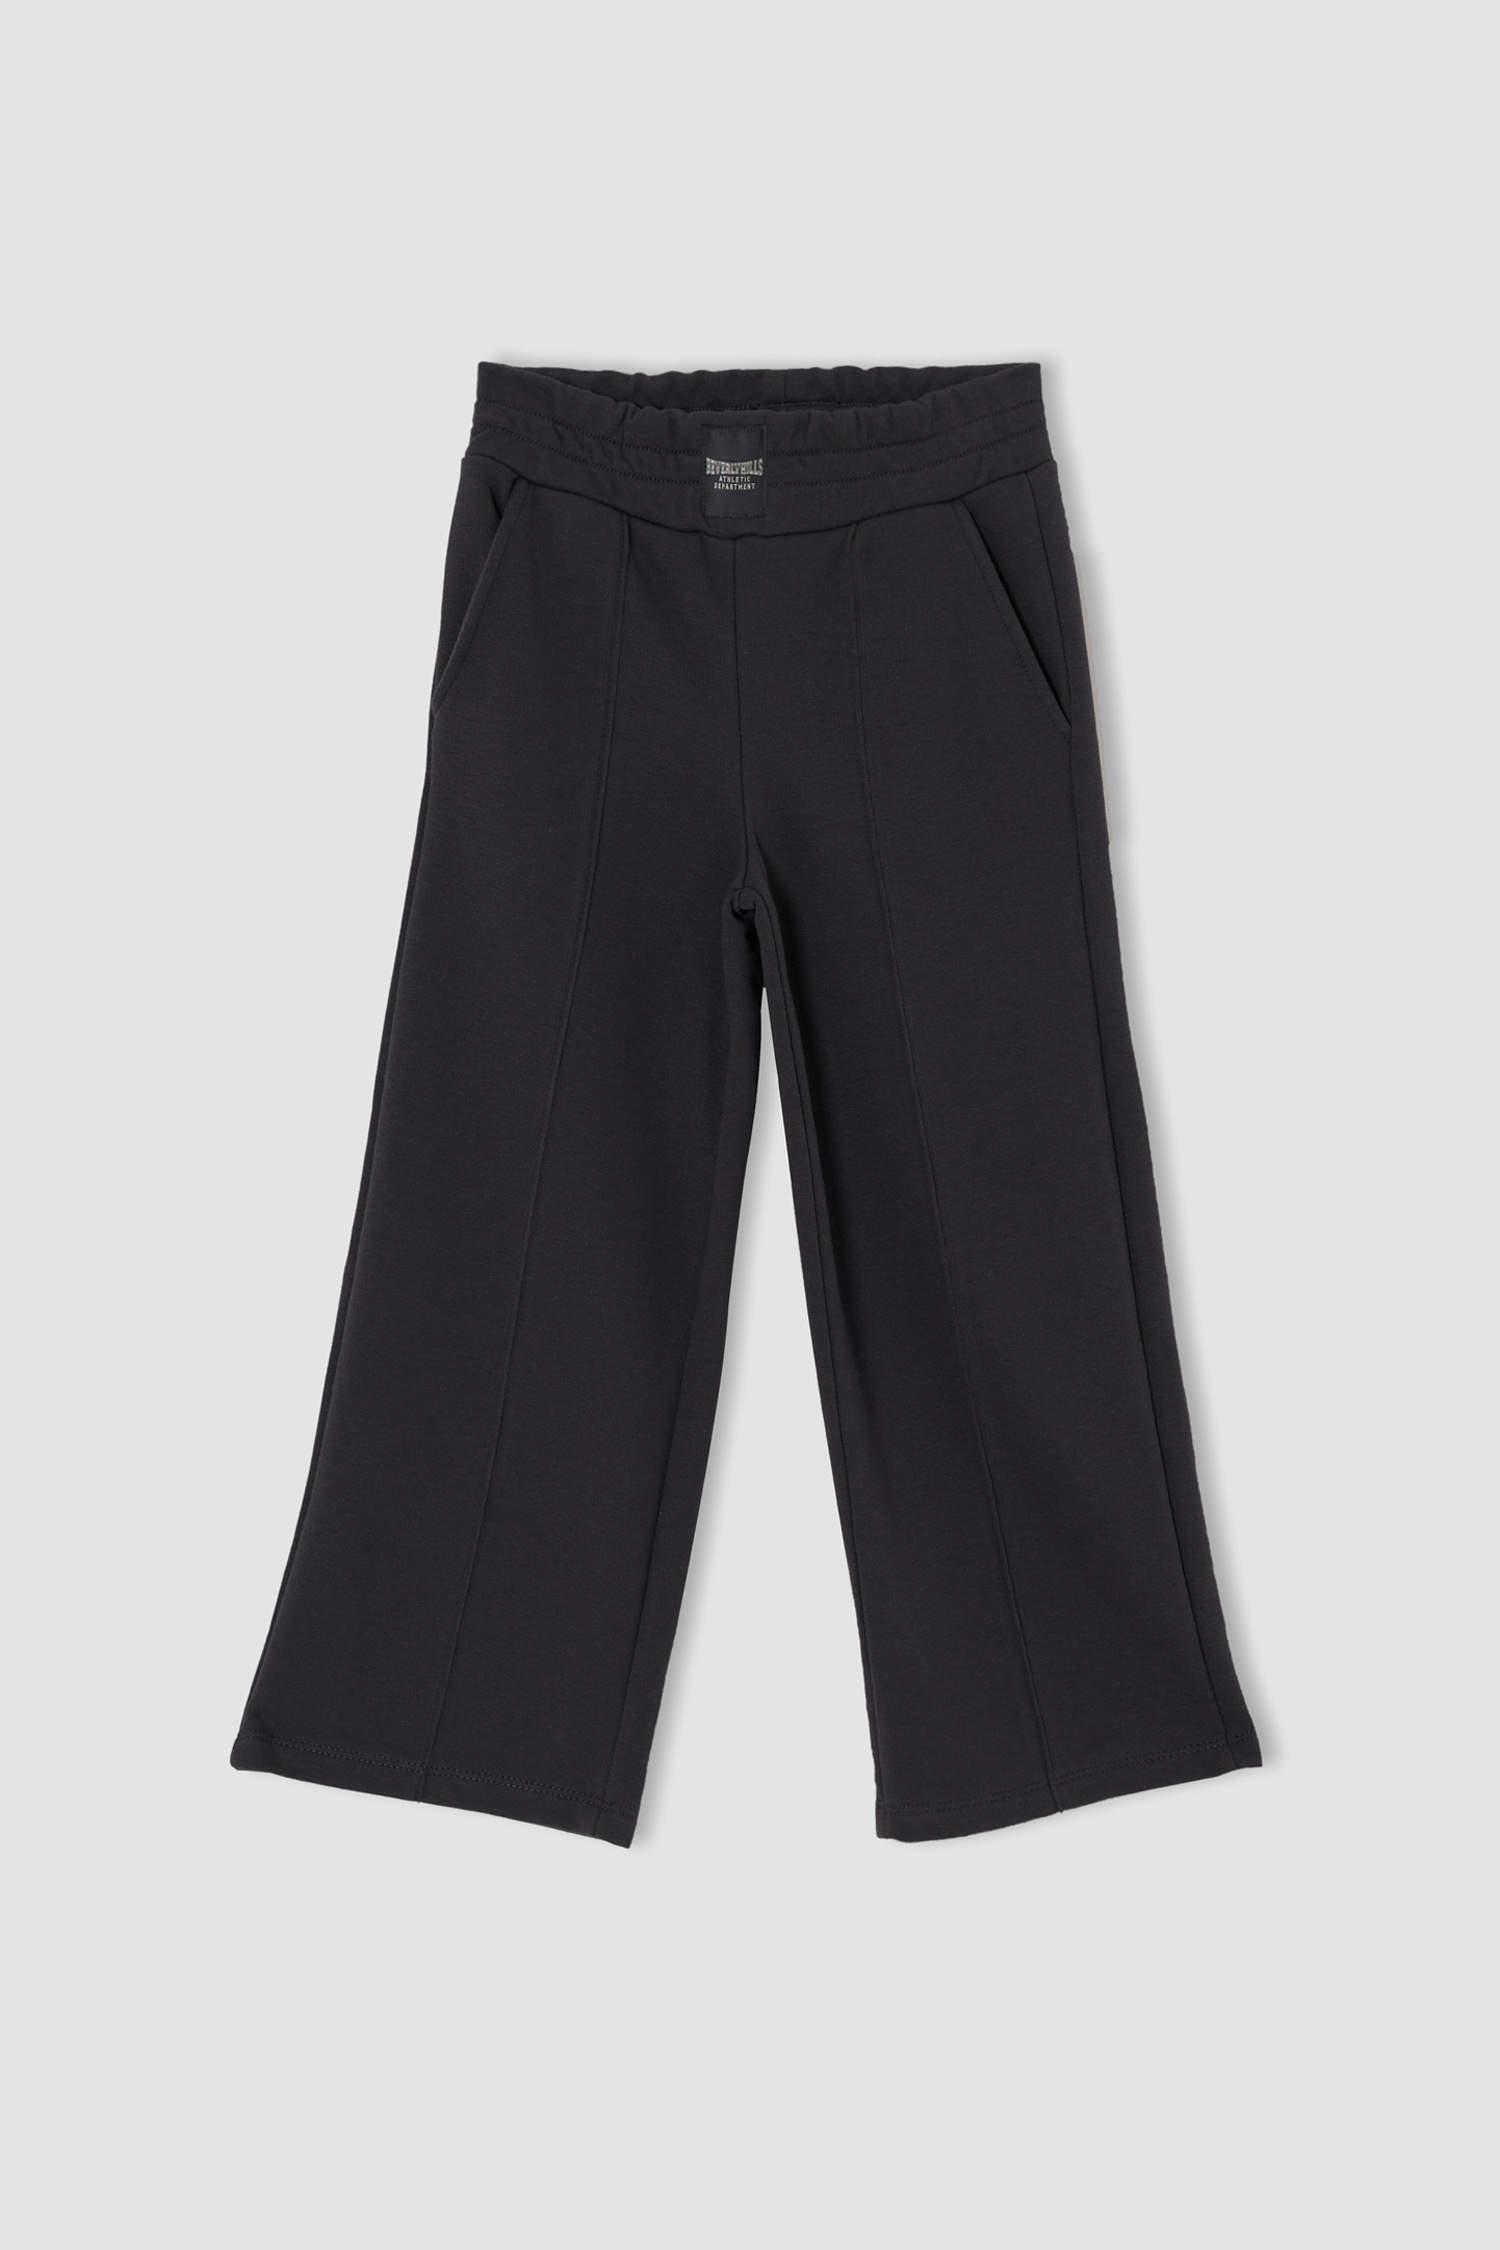 Черные спортивные штаны с эластичной резинкой на талии и широкими штанинами